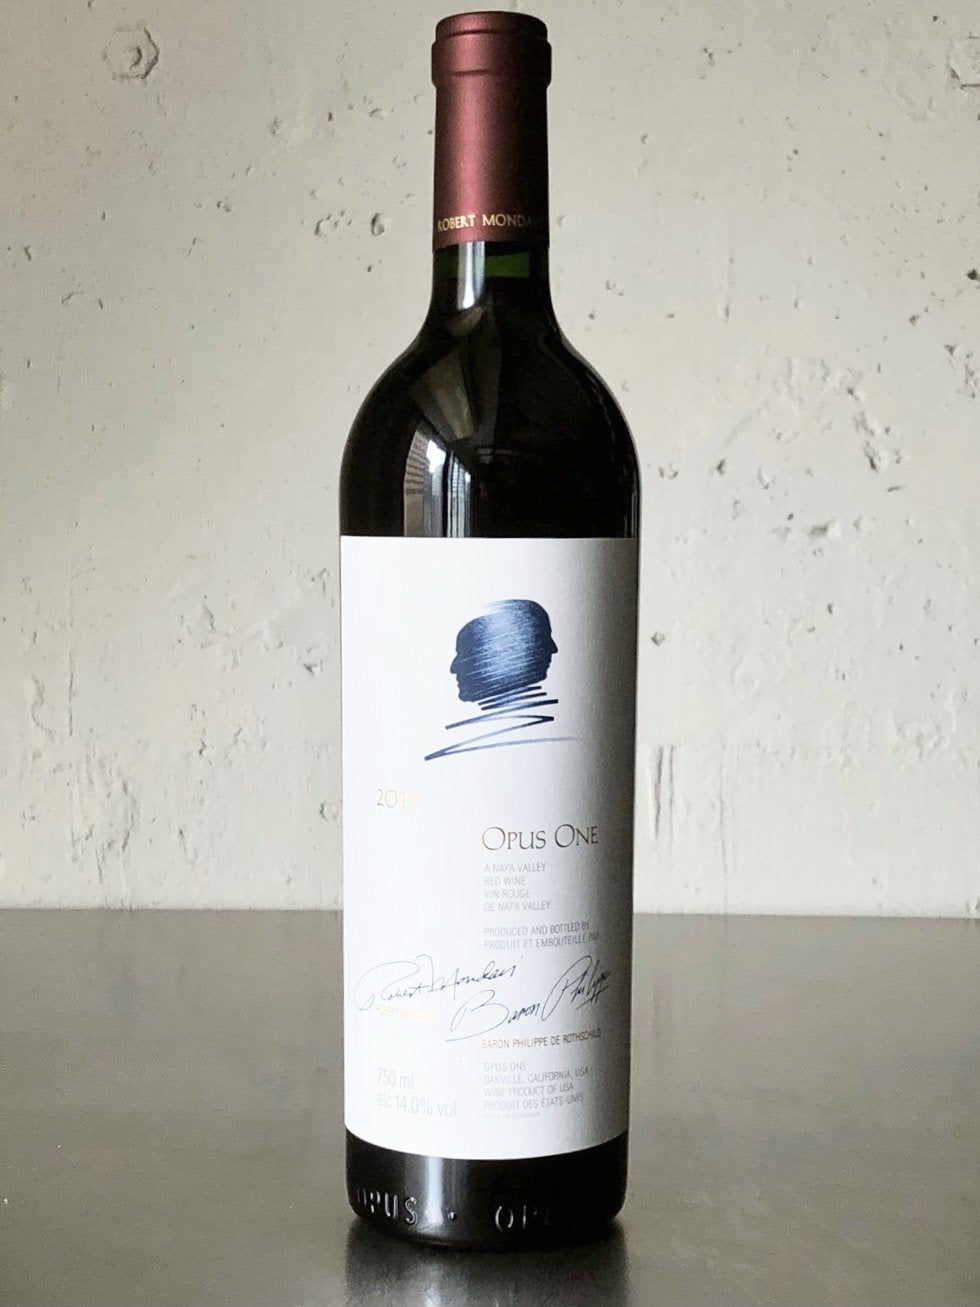 オーパスワン 2018年Opus One カリフォルニア 750ml赤ワイン アメリカ